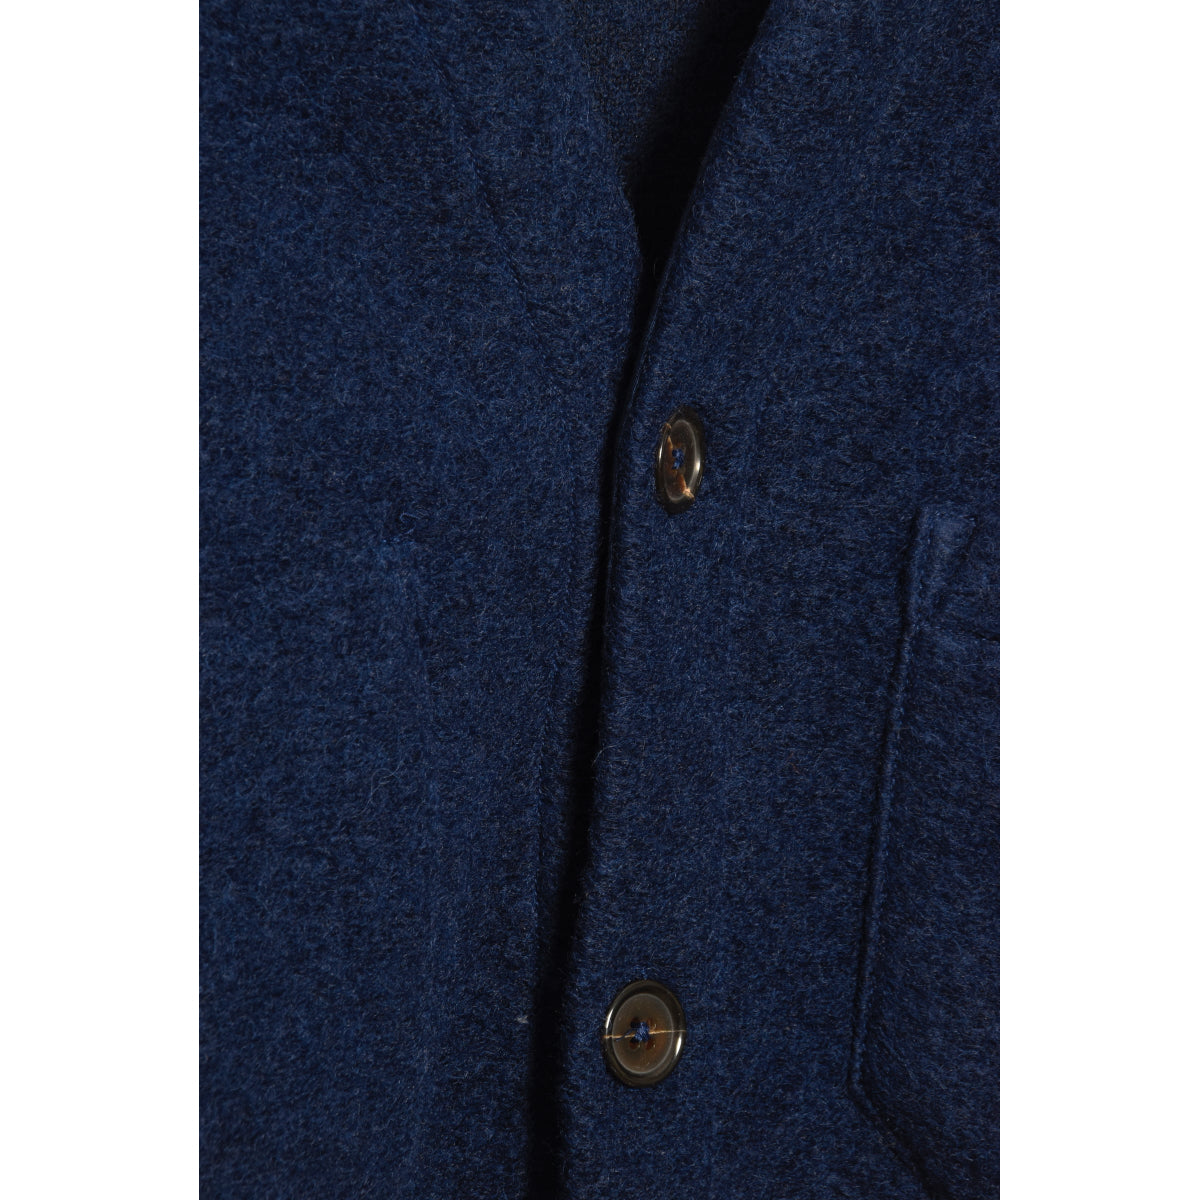 Universal Works Cardigan 29710 Wool Fleece indigo